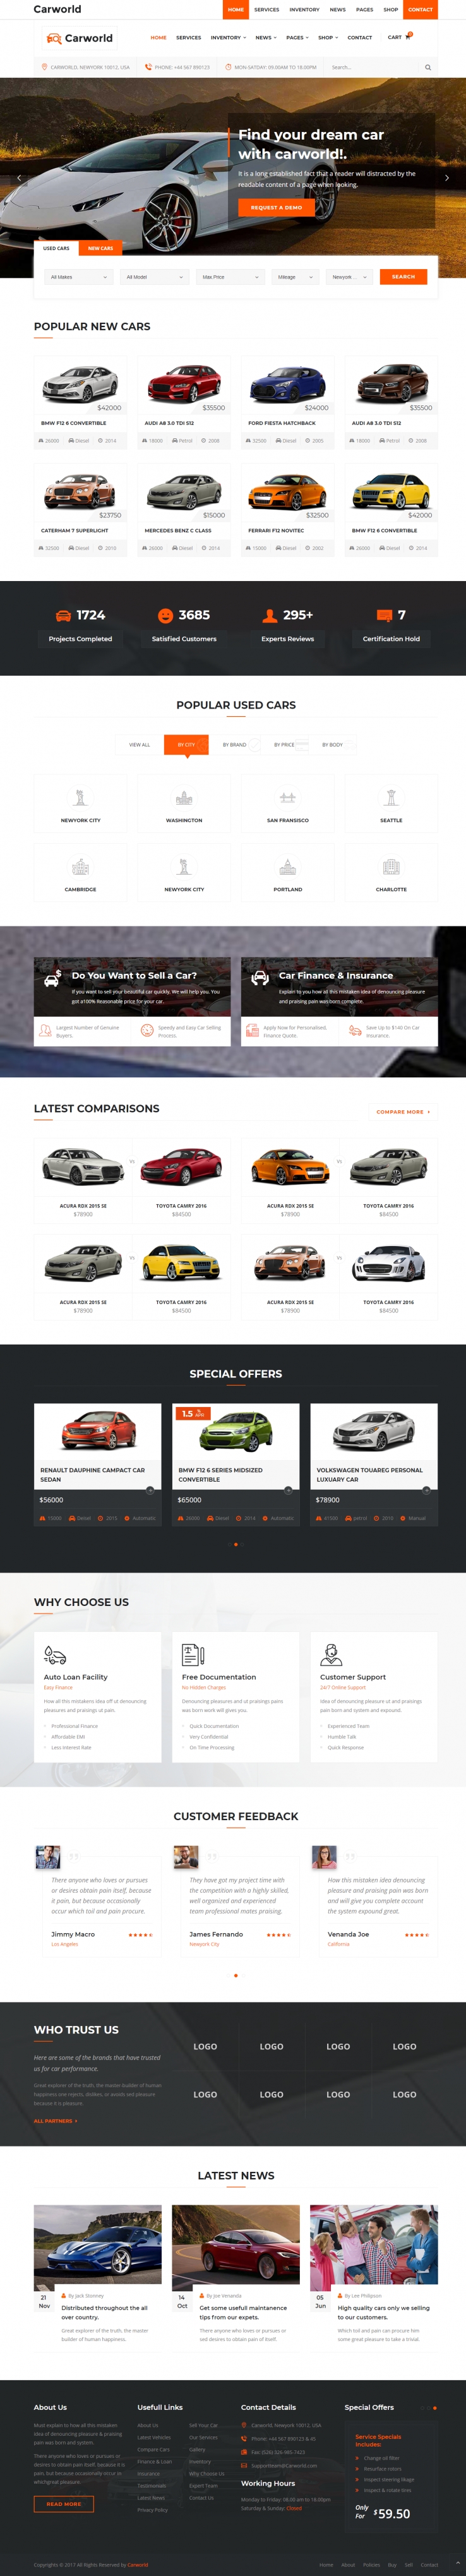 橙色简洁风格的汽车经销商企业网站源码下载